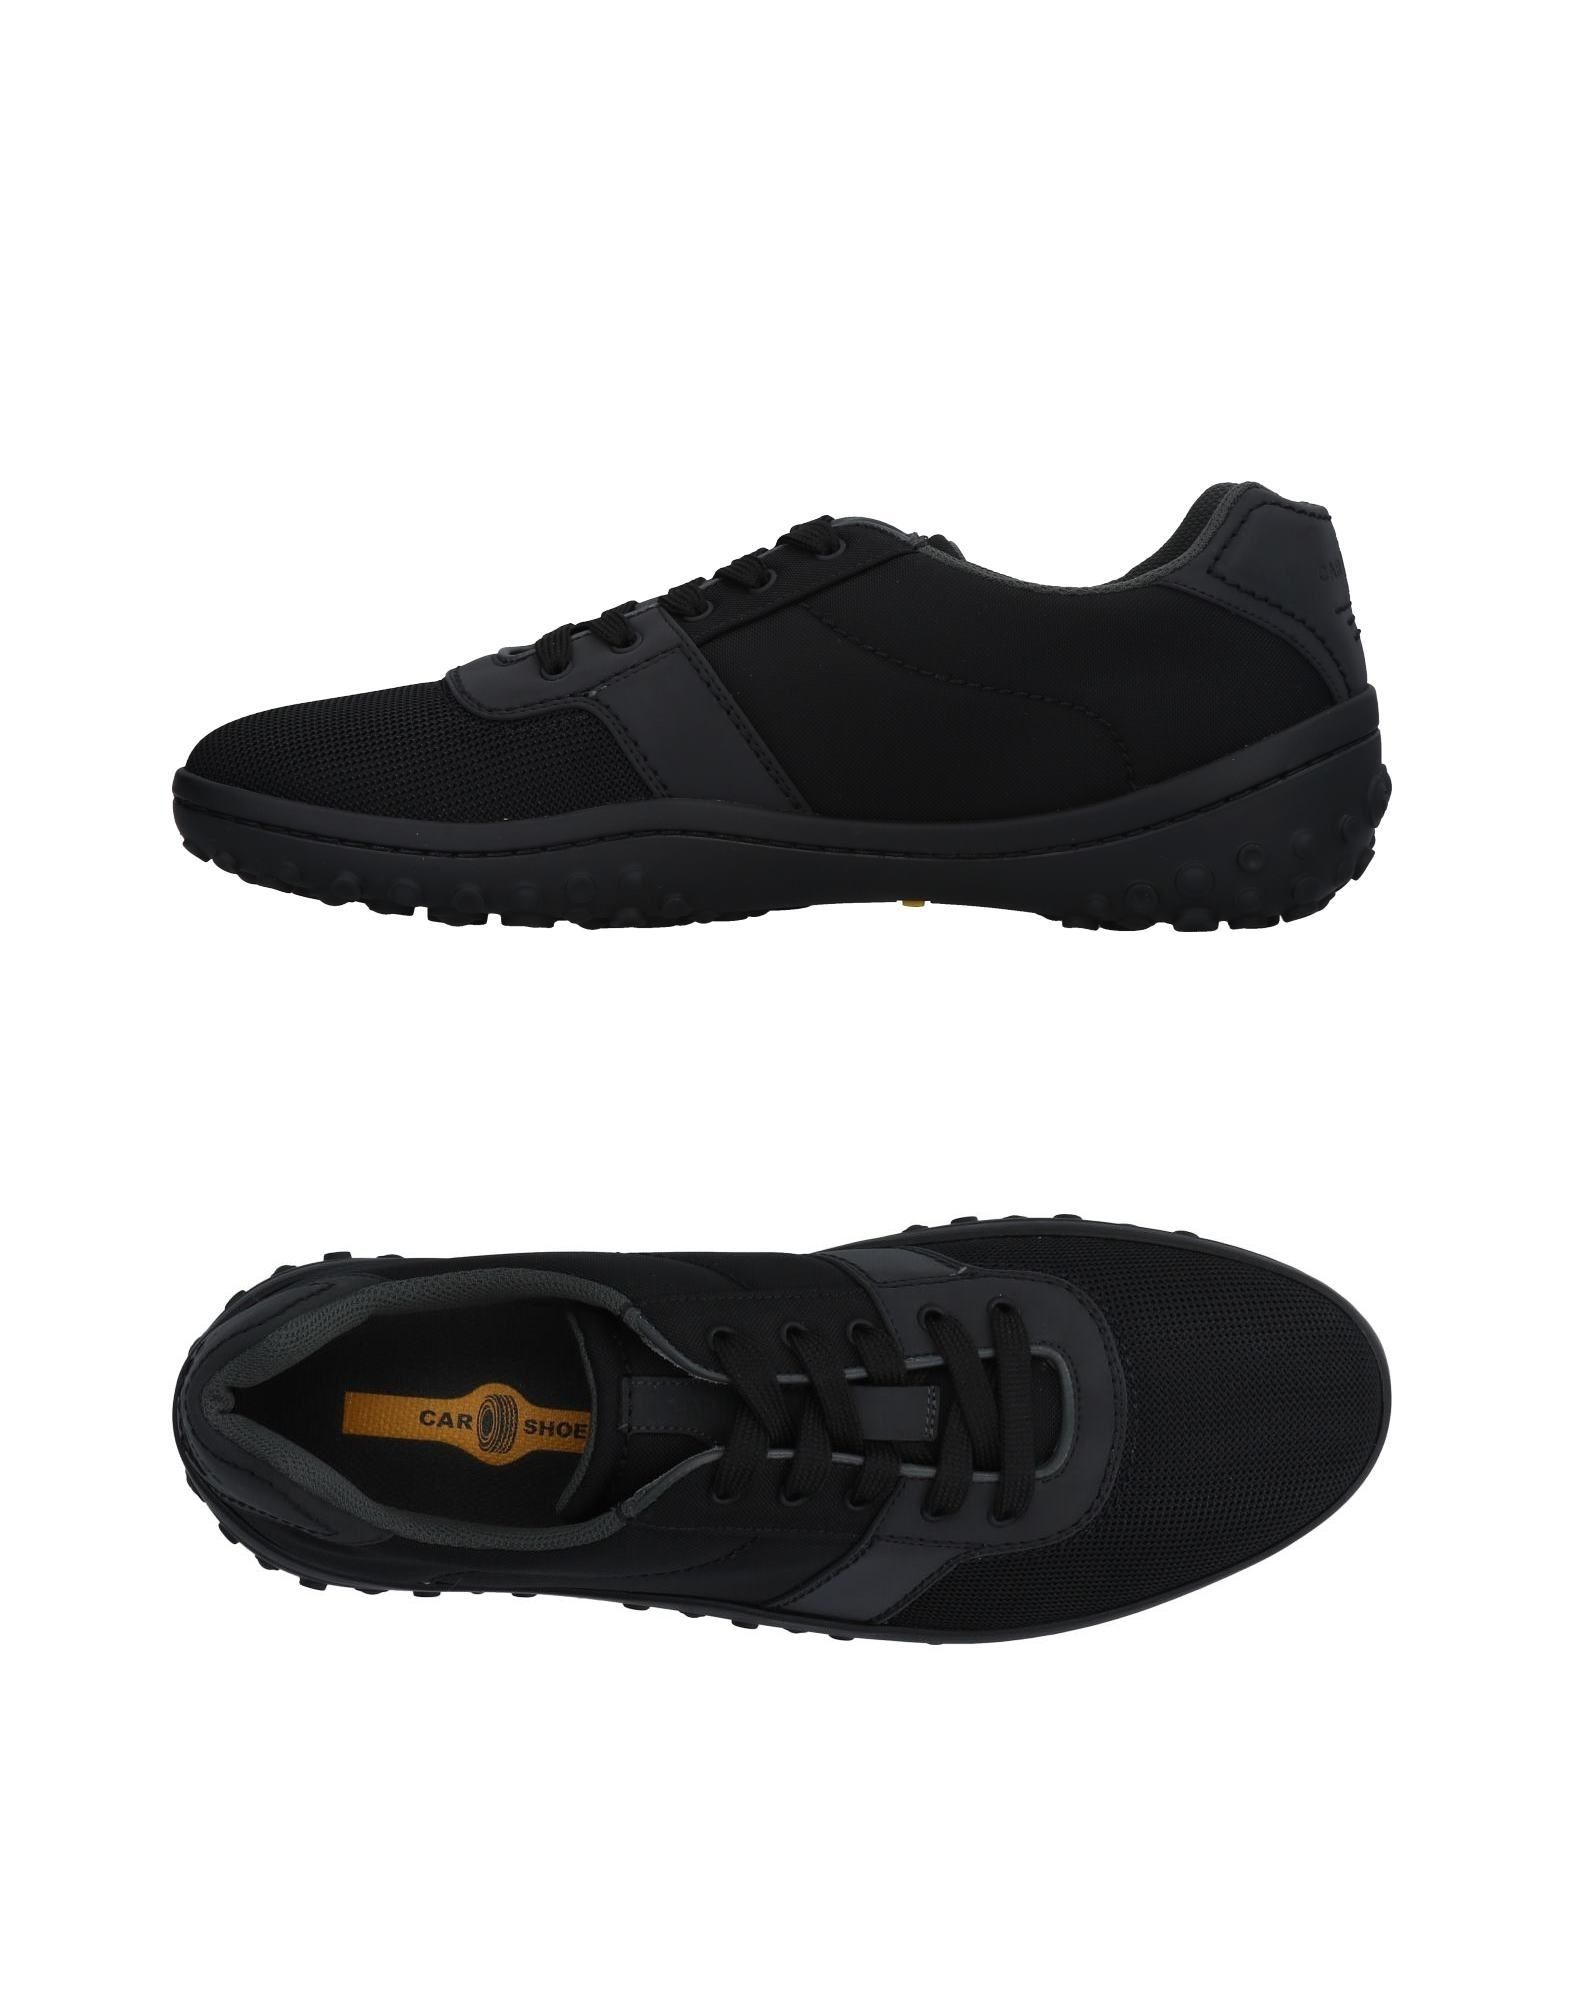 Carshoe Sneakers In Black | ModeSens